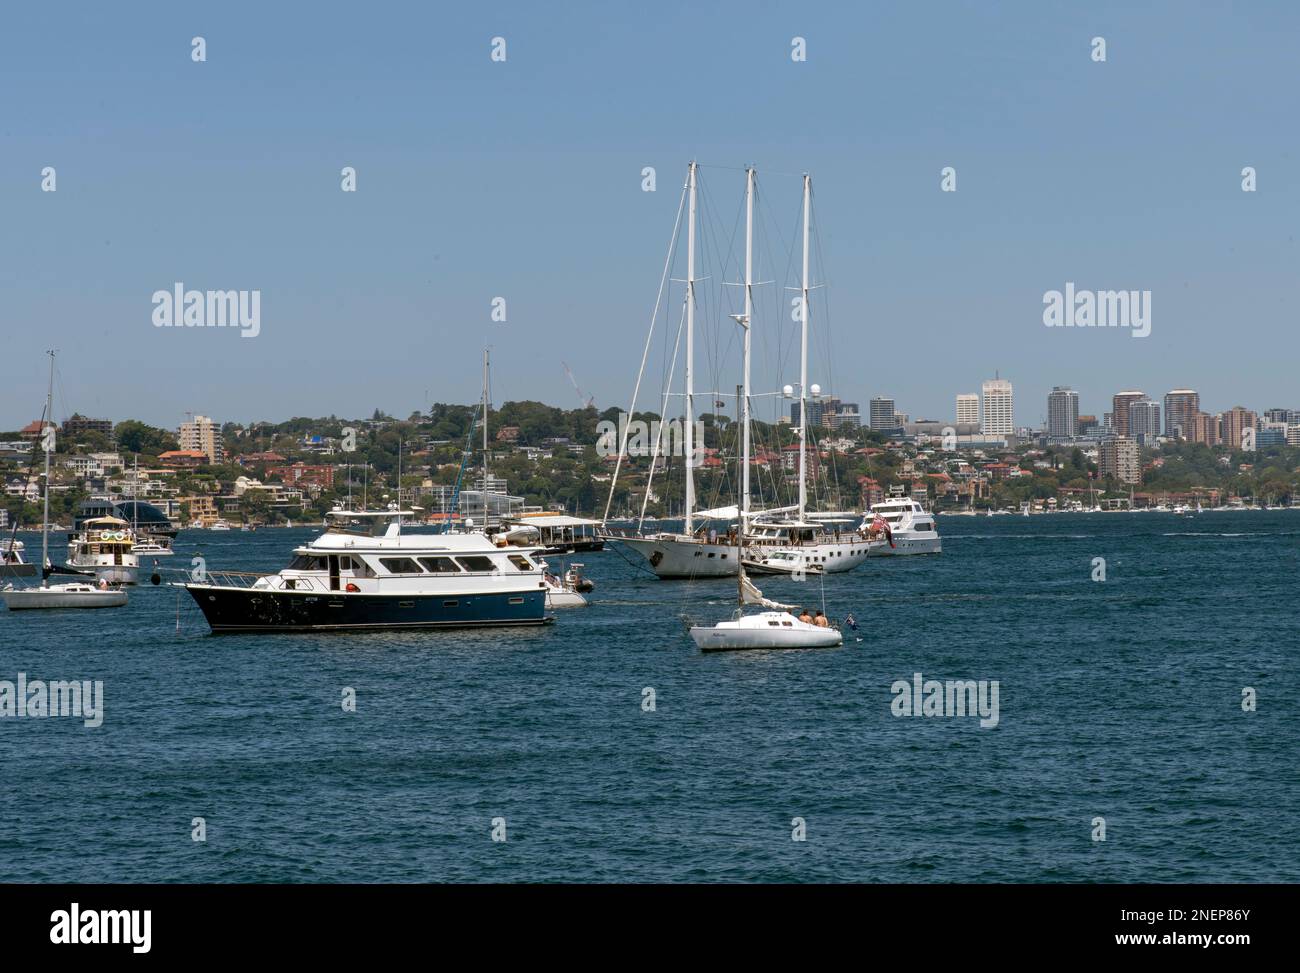 Yachts et bateaux dans le port de Sydney à Sydney, Nouvelle-Galles du Sud, Australie (photo de Tara Chand Malhotra) Banque D'Images